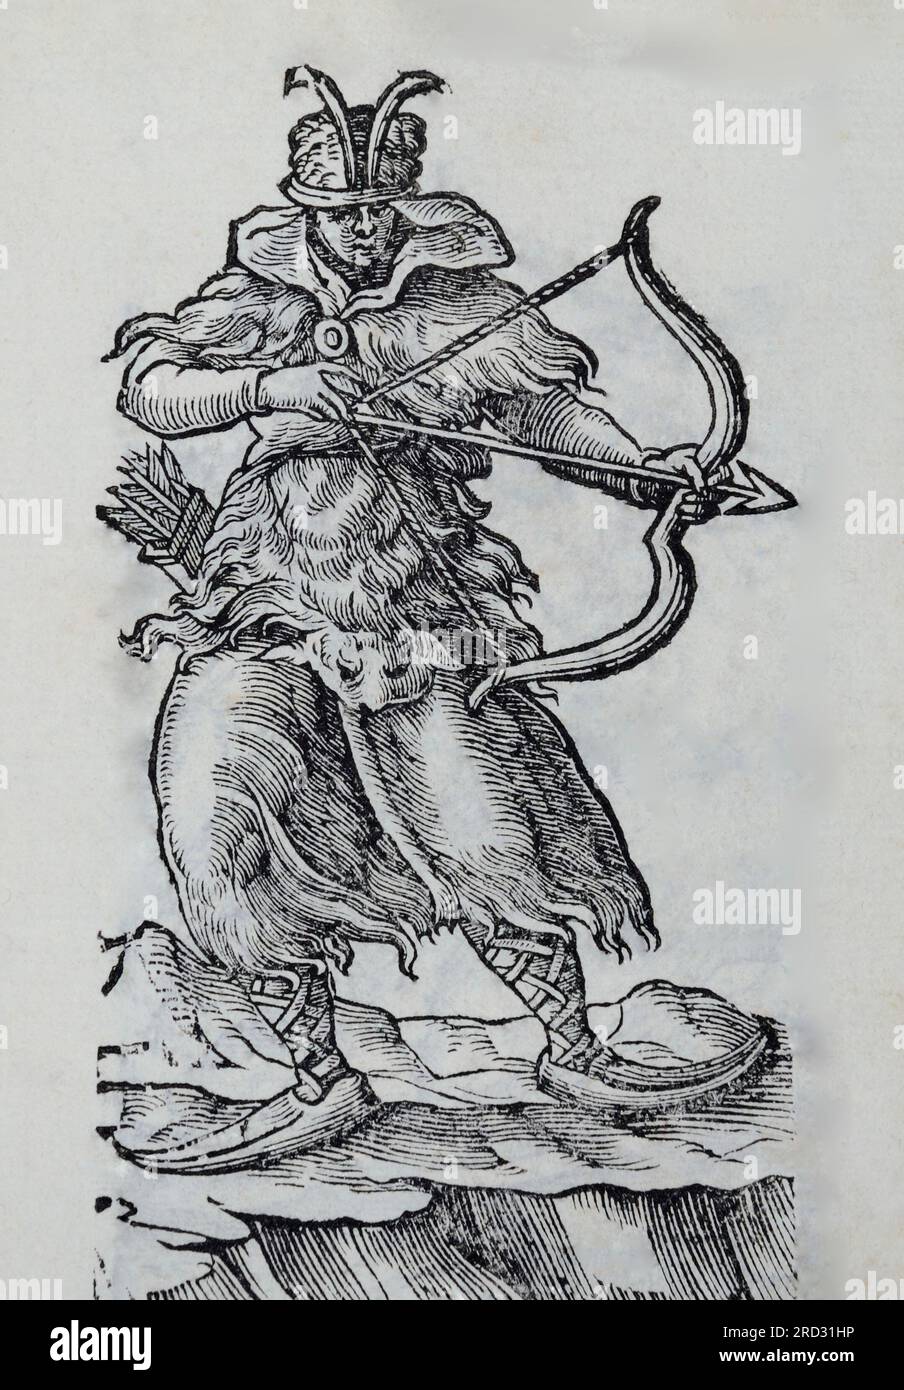 Ein sehr frühes Bild einer weiblichen Biarmianerin, mit Bogen und Pfeilen, Pelzrock, Himmel in ihren Füßen. Eine Biarmeerfrau war kein Objekt, sie war eine Stockfoto